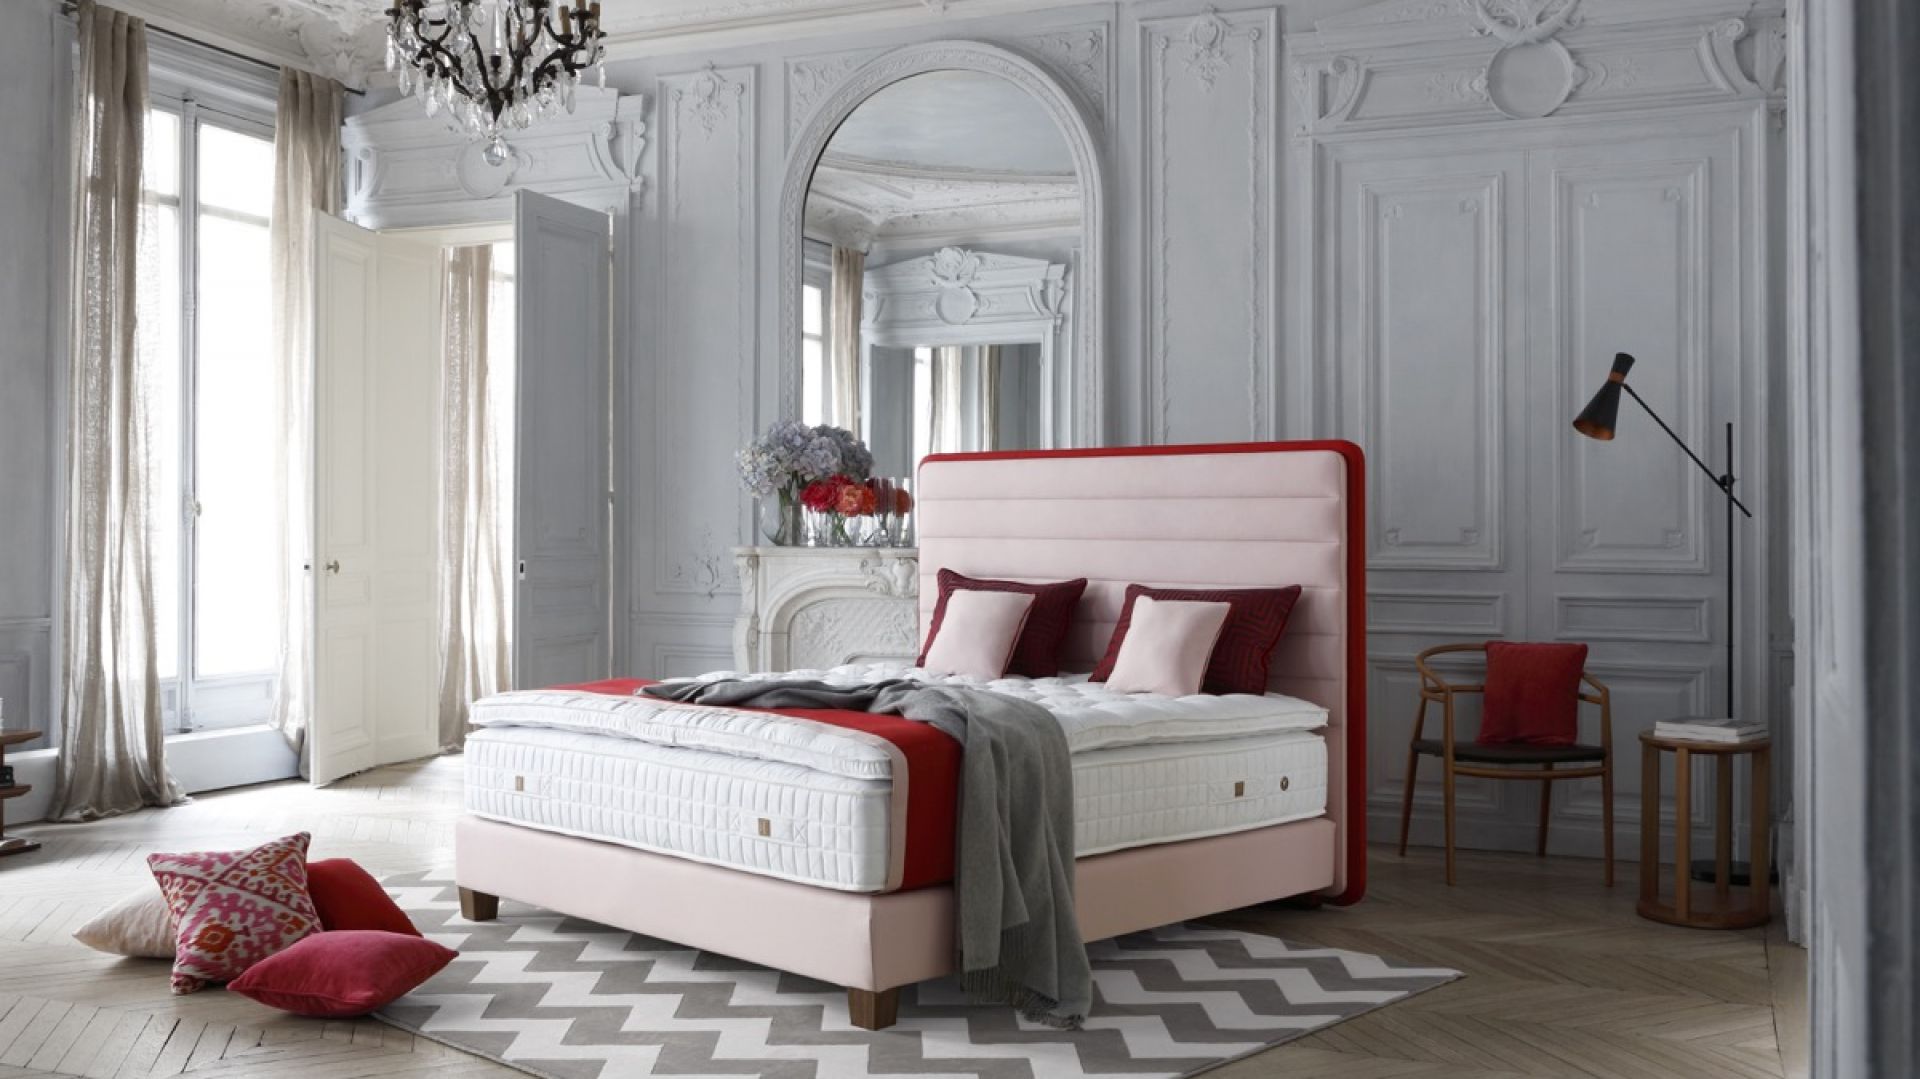 Luksusowa sypialnia - poznaj łóżka francuskiej marki